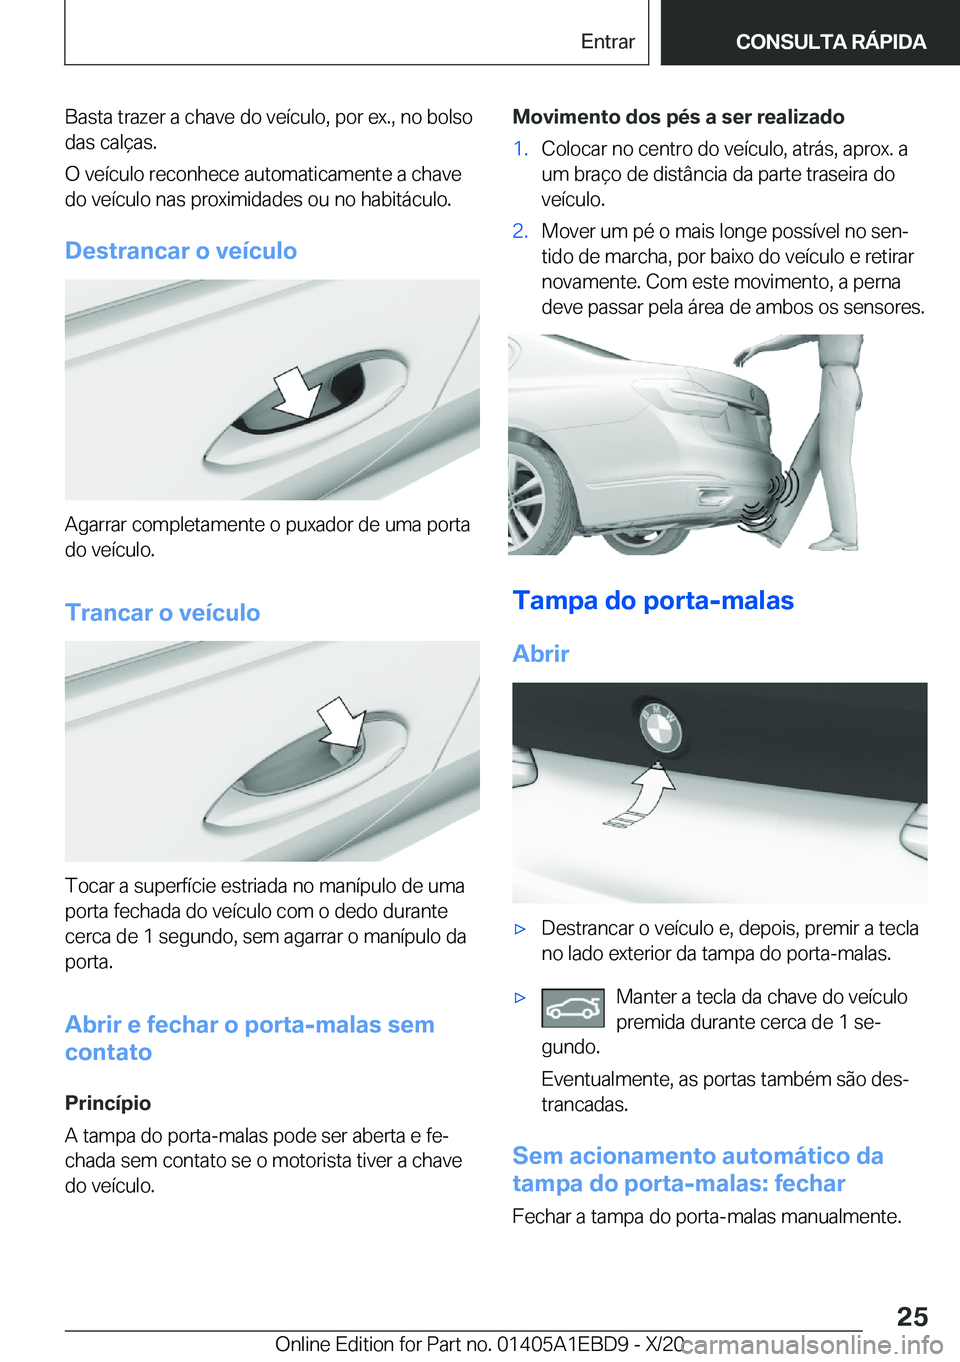 BMW 3 SERIES 2021  Manual do condutor (in Portuguese) �B�a�s�t�a��t�r�a�z�e�r��a��c�h�a�v�e��d�o��v�e�